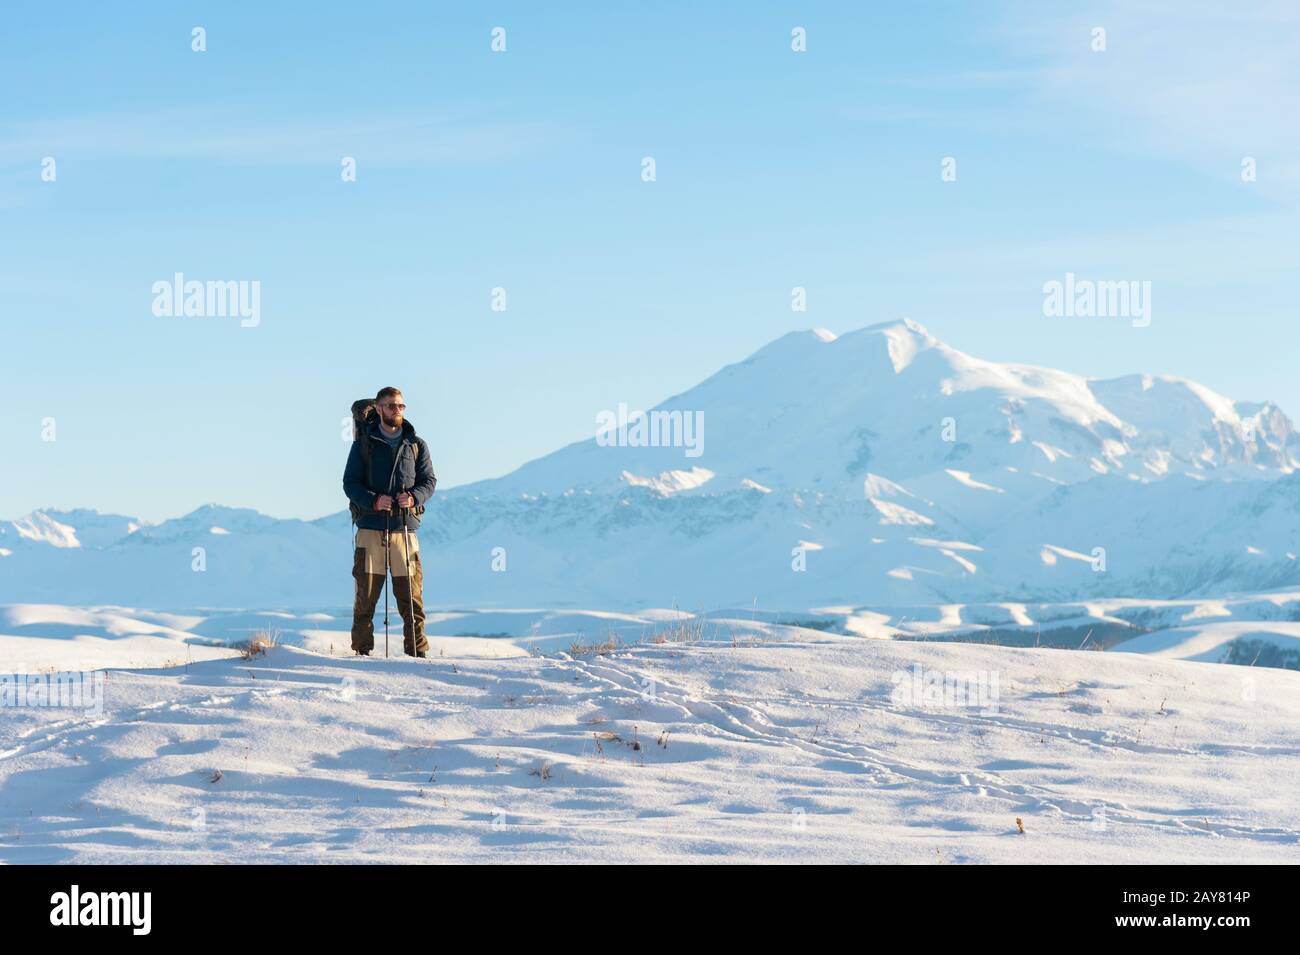 Un voyageur avec un grand sac à dos sur ses épaules debout sur une colline enneigée contre le ciel bleu et le sommeil Elbrus volca Banque D'Images